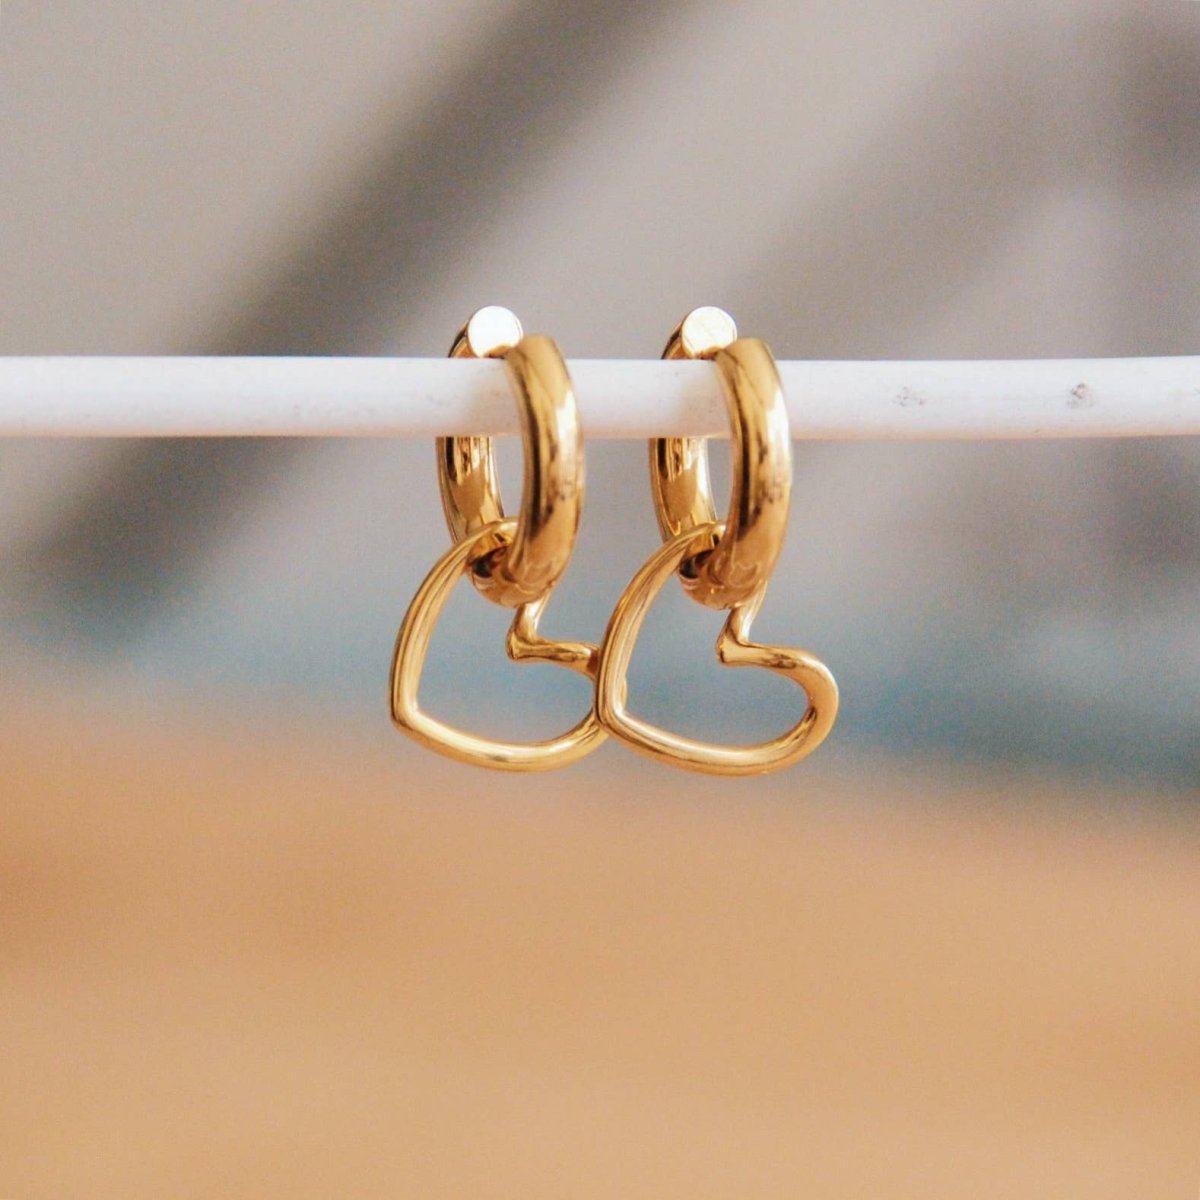 Ampio creoli in acciaio inossidabile con cuore aperto - oro - Infinity Concept Store